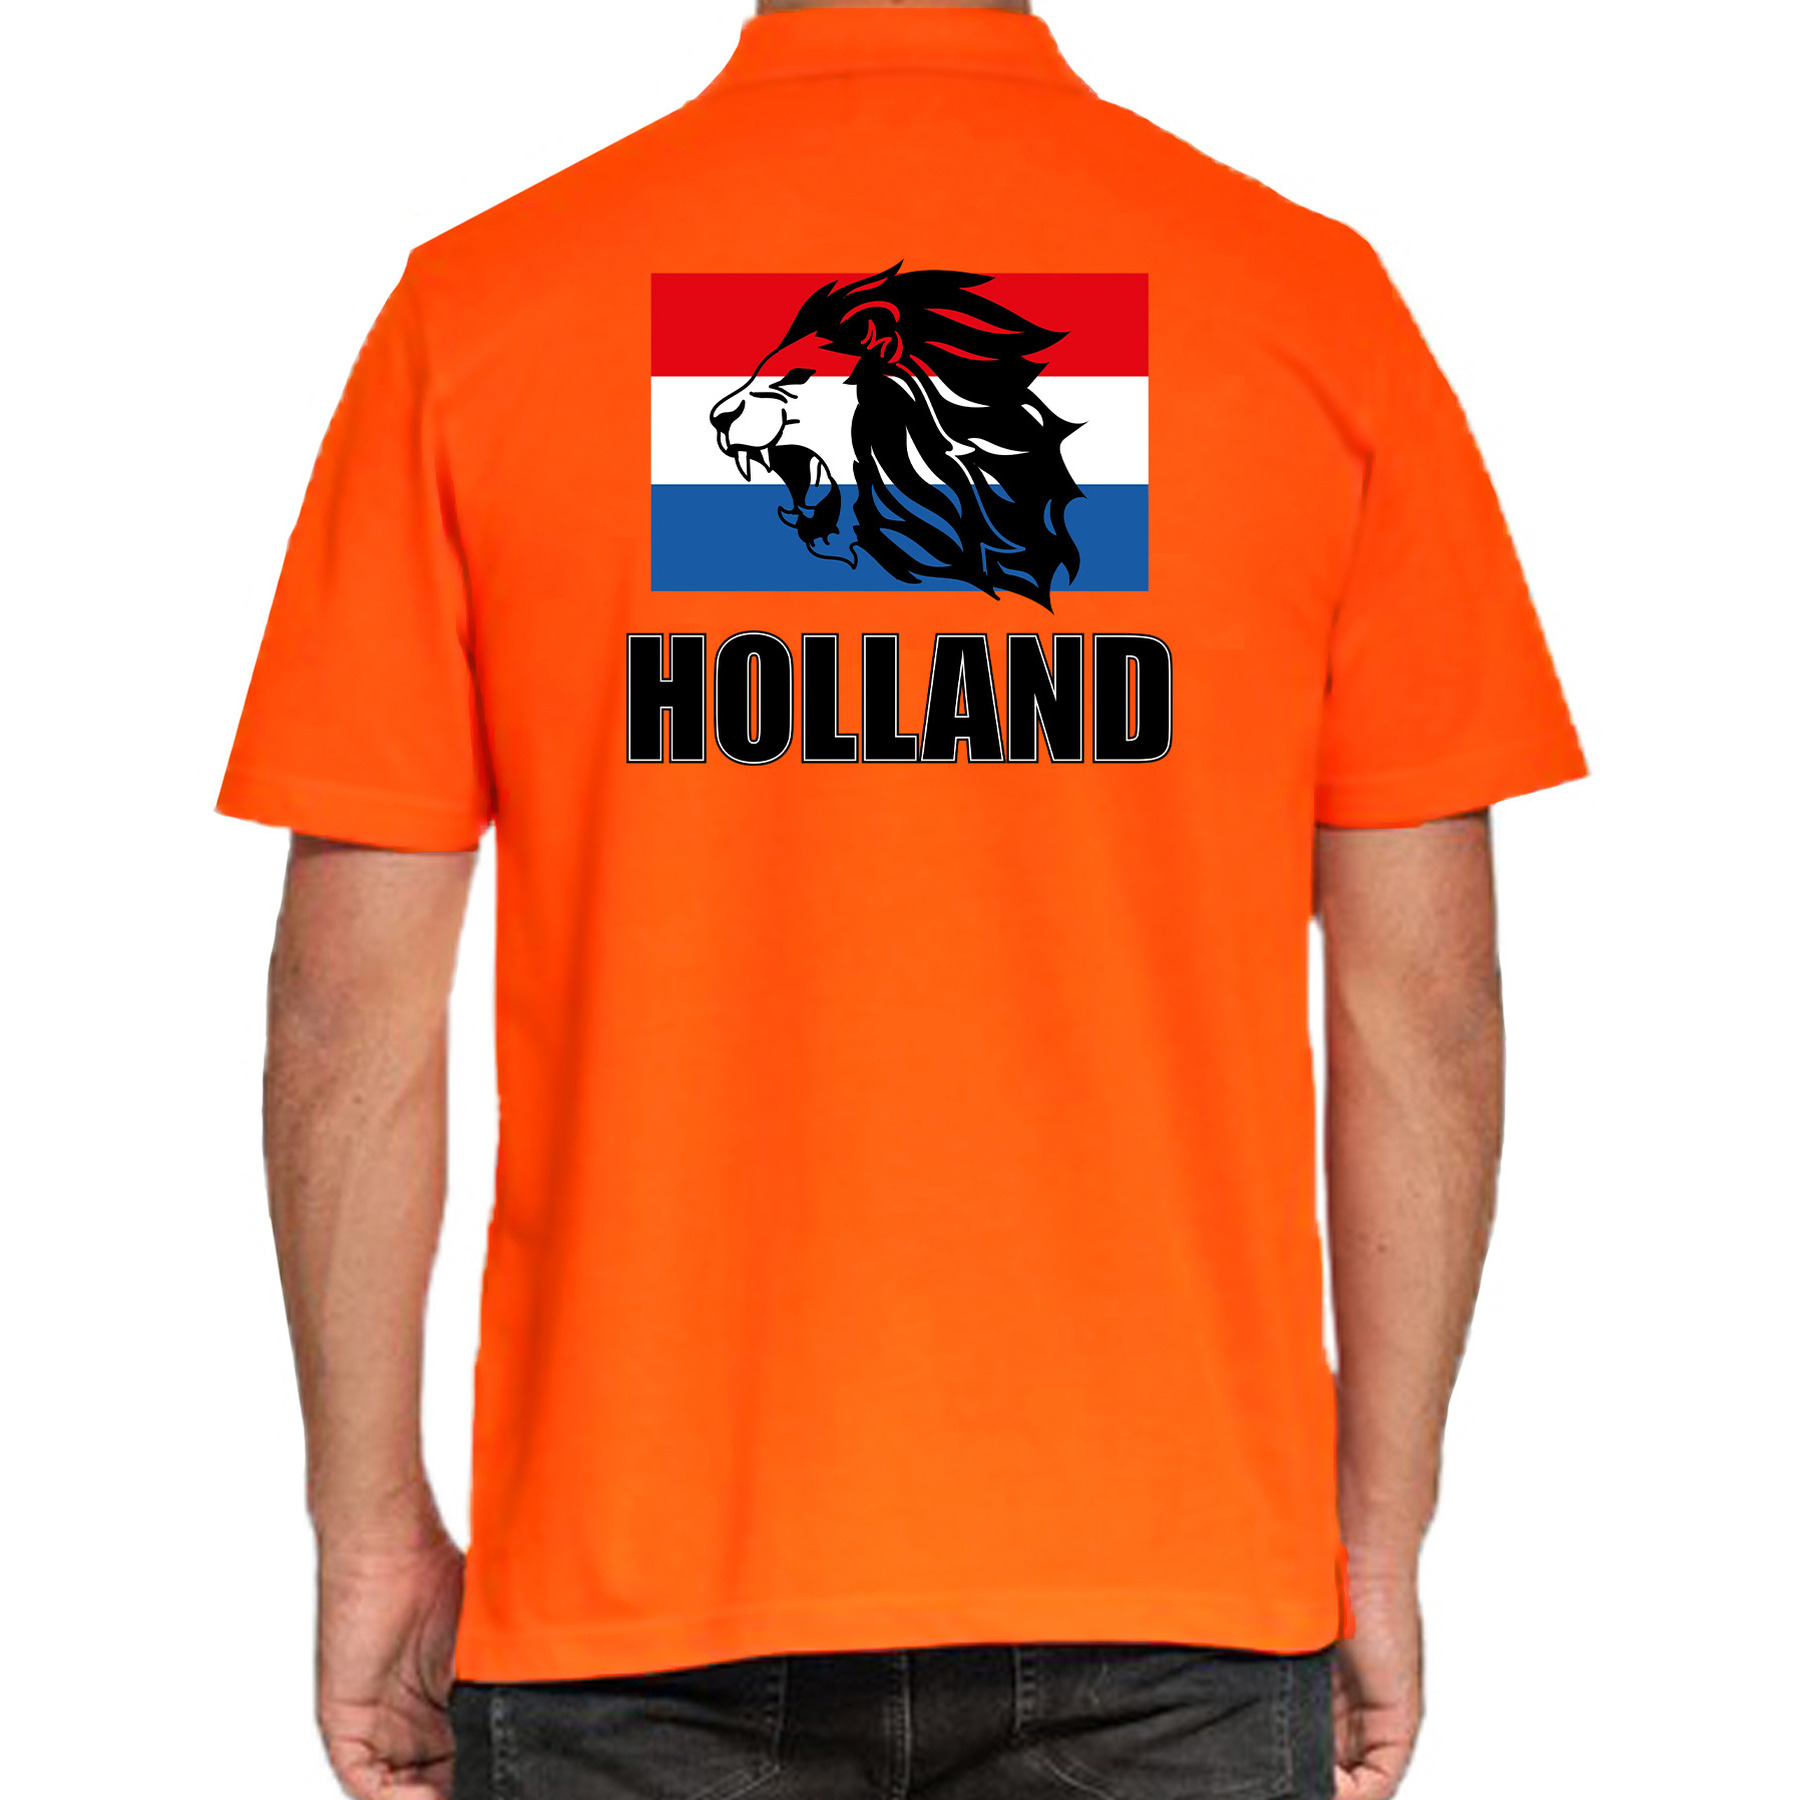 Grote maten oranje poloshirt met leeuw en vlag Holland - Nederland supporter EK/ WK voor heren